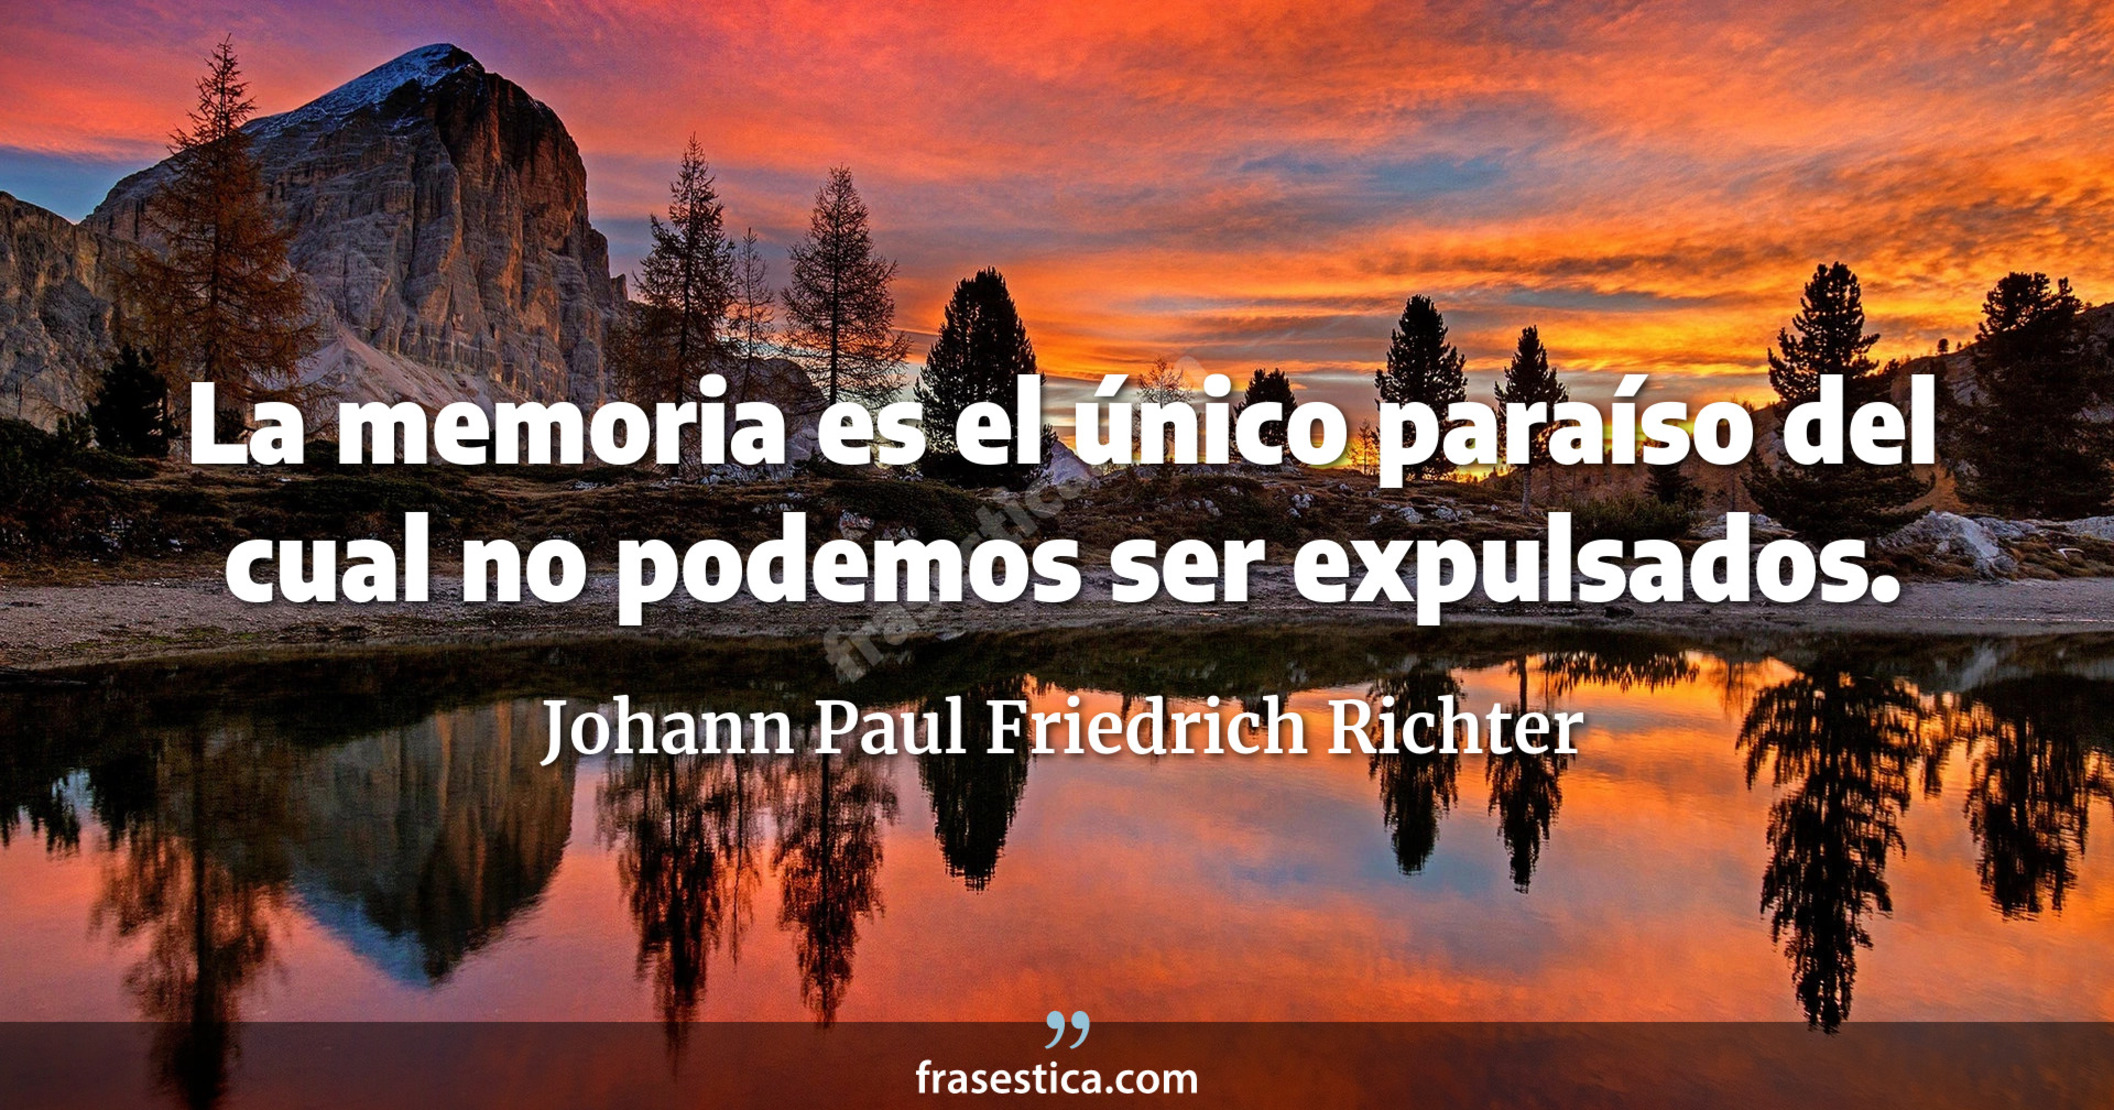 La memoria es el único paraíso del cual no podemos ser expulsados. - Johann Paul Friedrich Richter